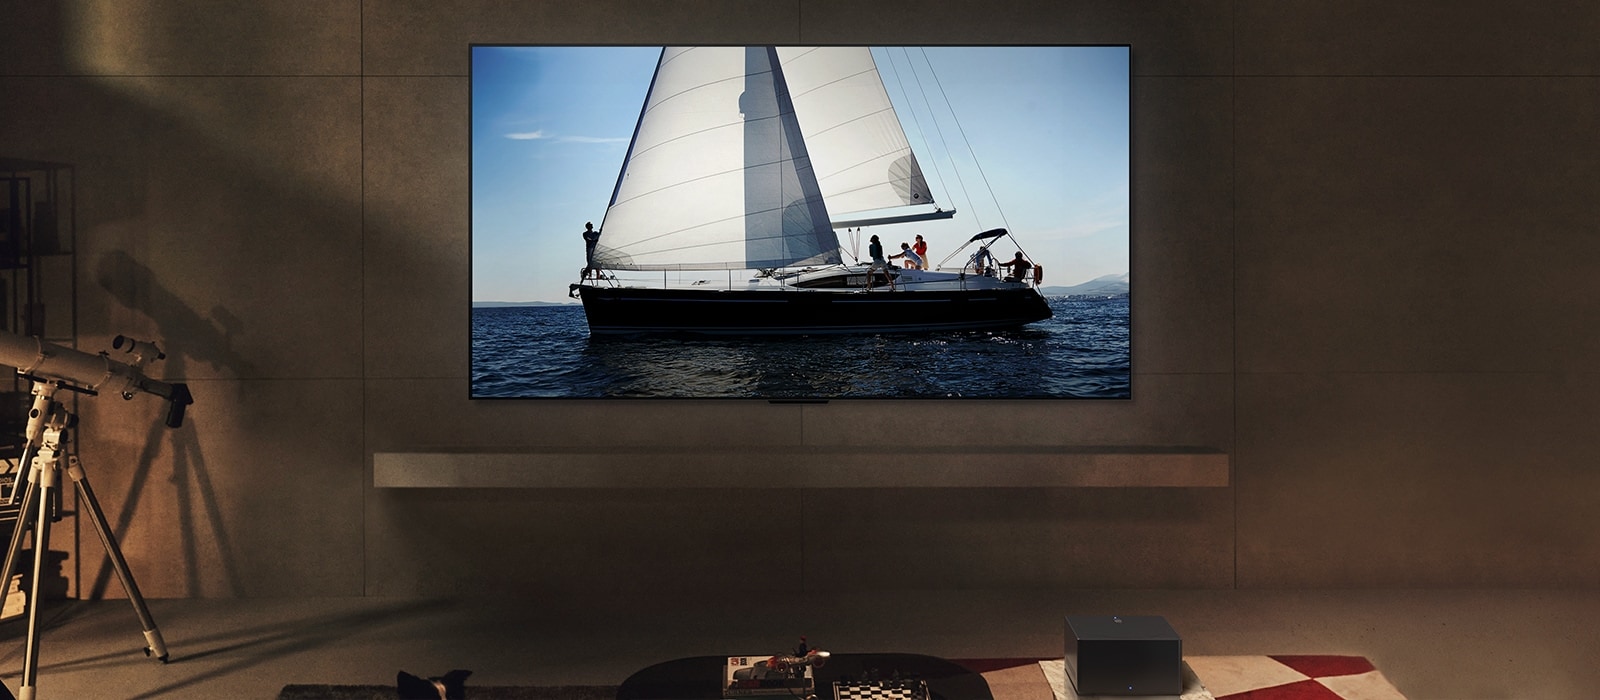 Μια LG OLED evo M4 και ένα LG Soundbar σε ένα σύγχρονο σαλόνι τη νύχτα. Εμφανίζεται μια εικόνα της οθόνης με ένα ιστιοπλοϊκό στη θάλασσα με τα ιδανικά επίπεδα φωτεινότητας.